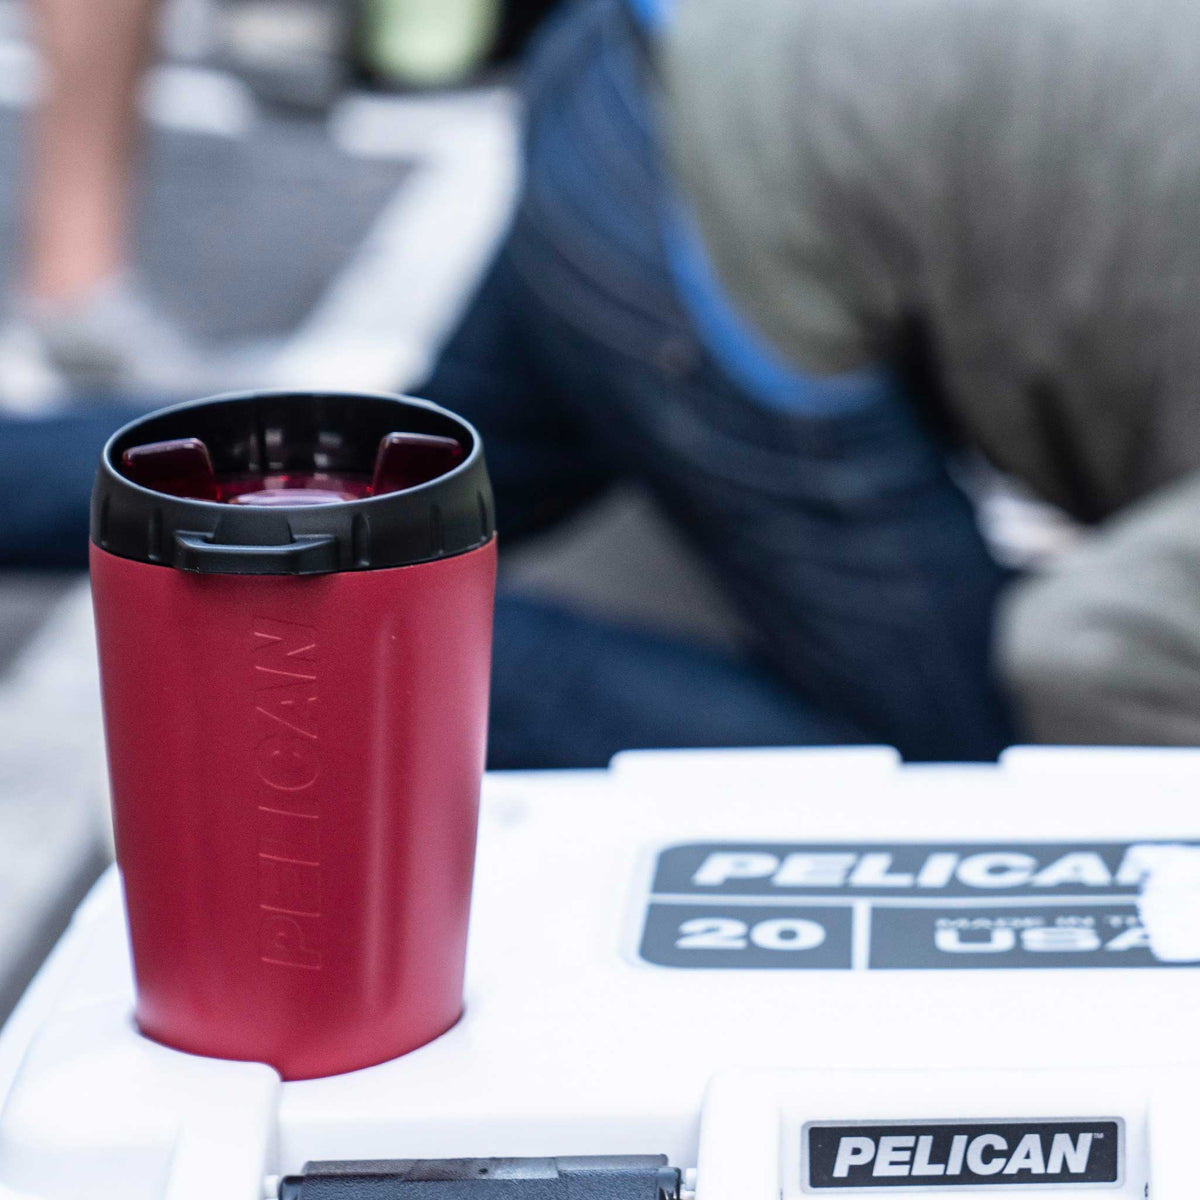 Pelican 10oz dayventure tumbler cup on cooler